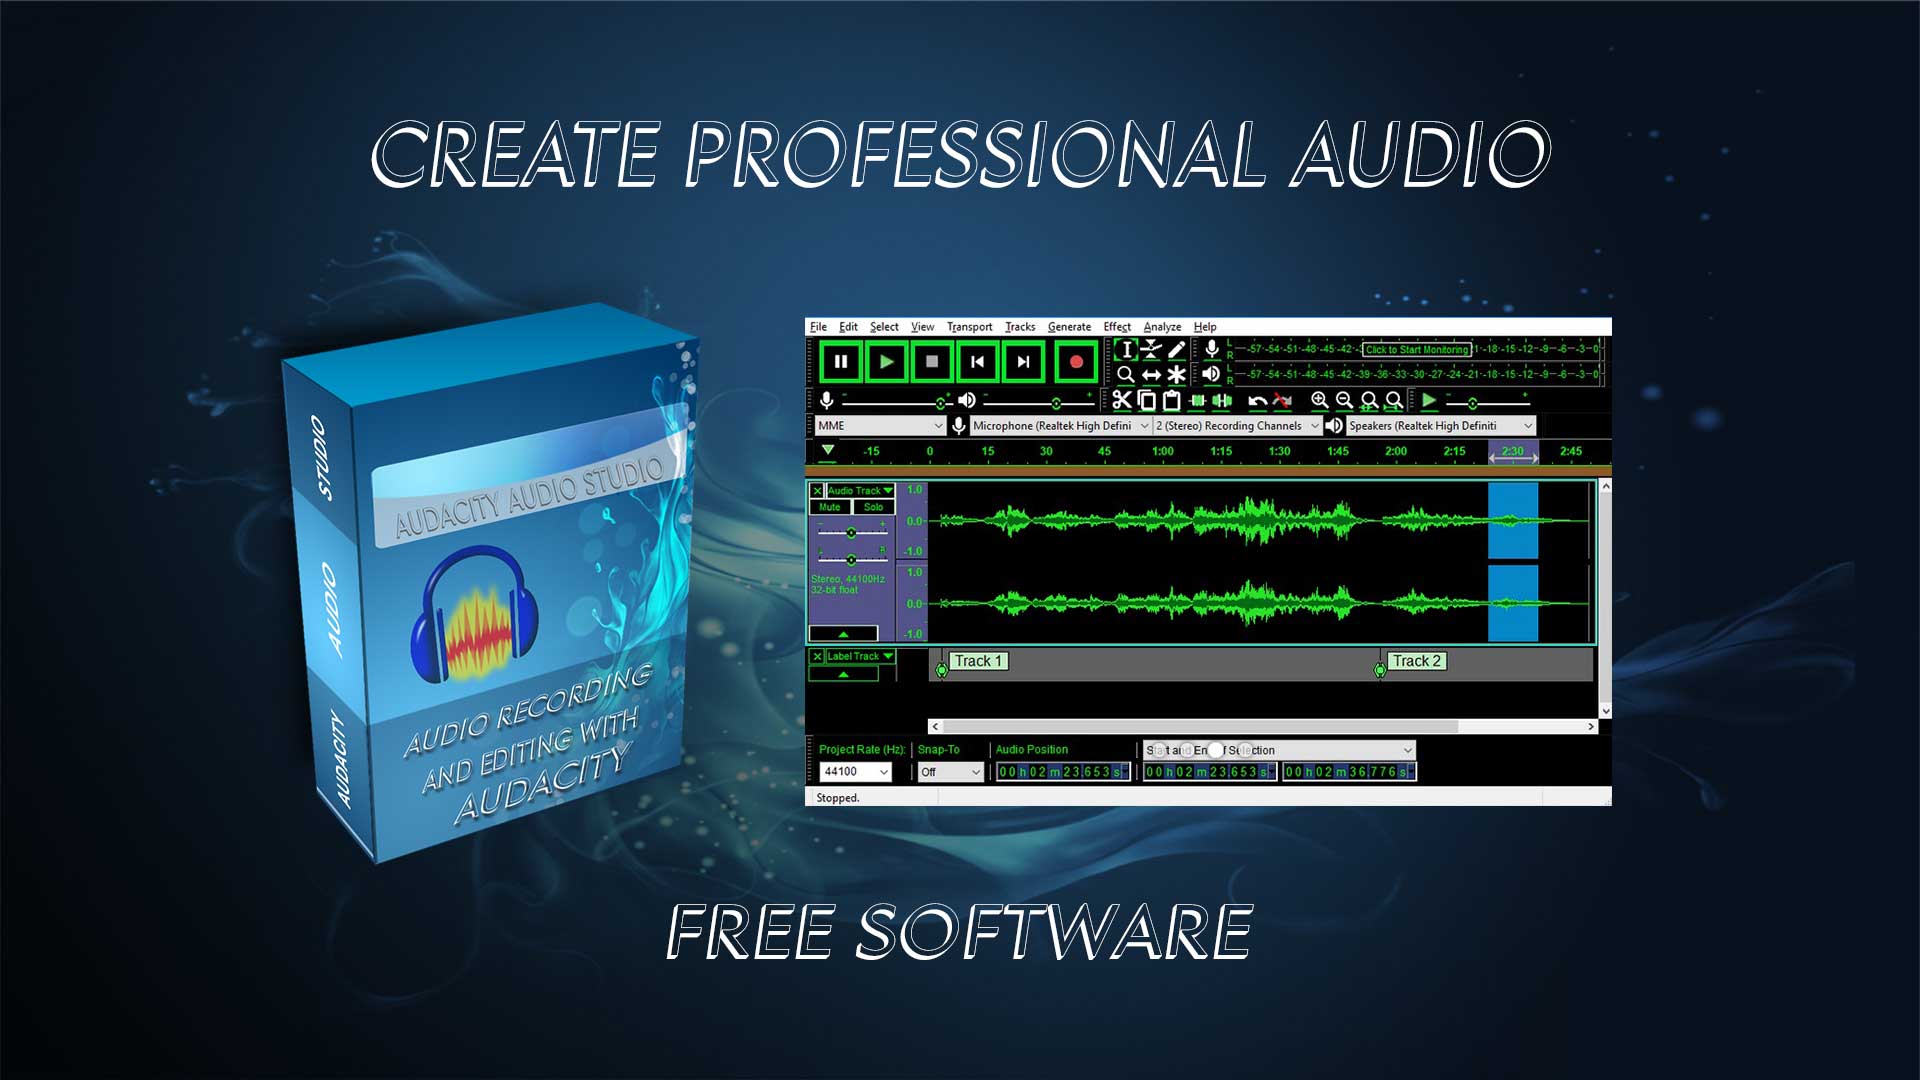 Audacity Professional Audio Recording & Editing